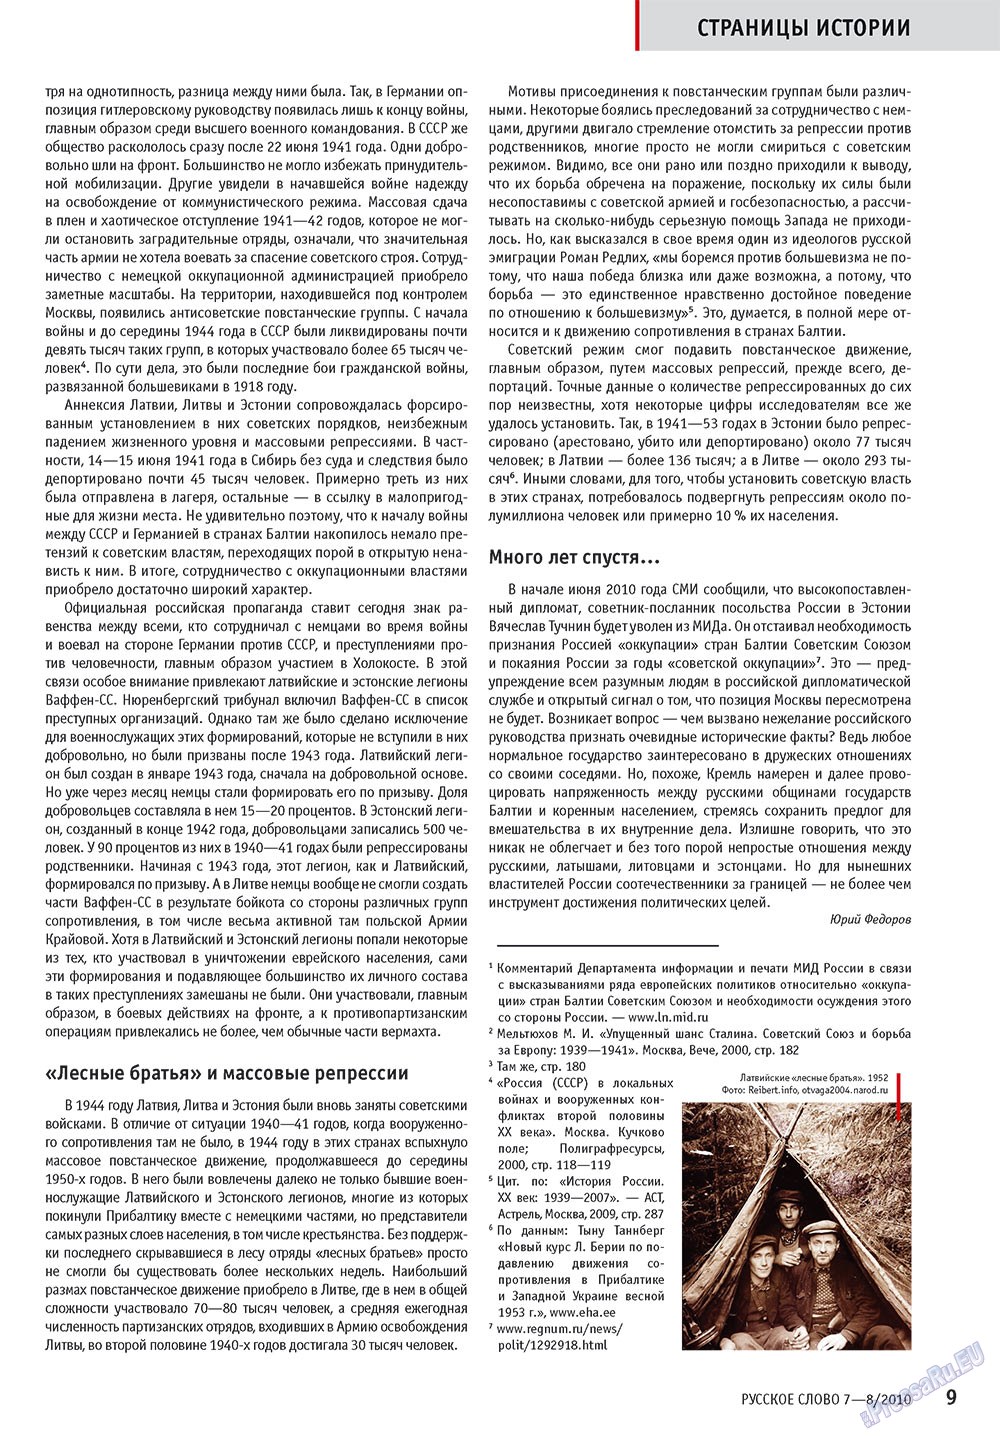 Русское слово, журнал. 2010 №7 стр.11